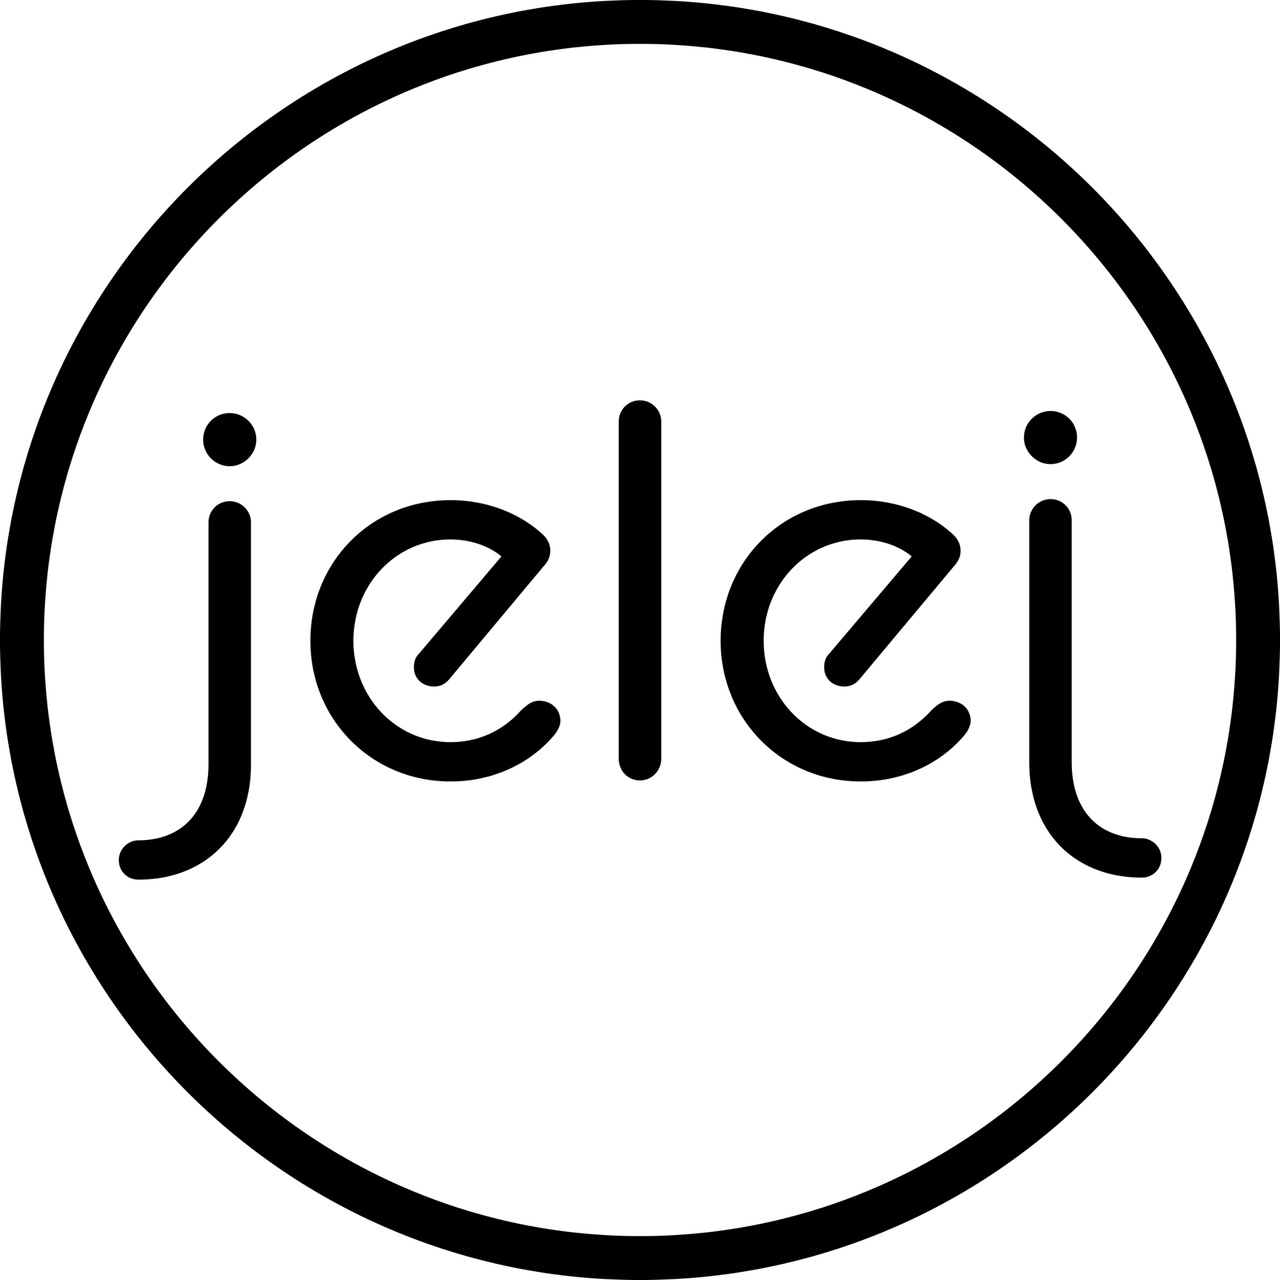 jelej logo